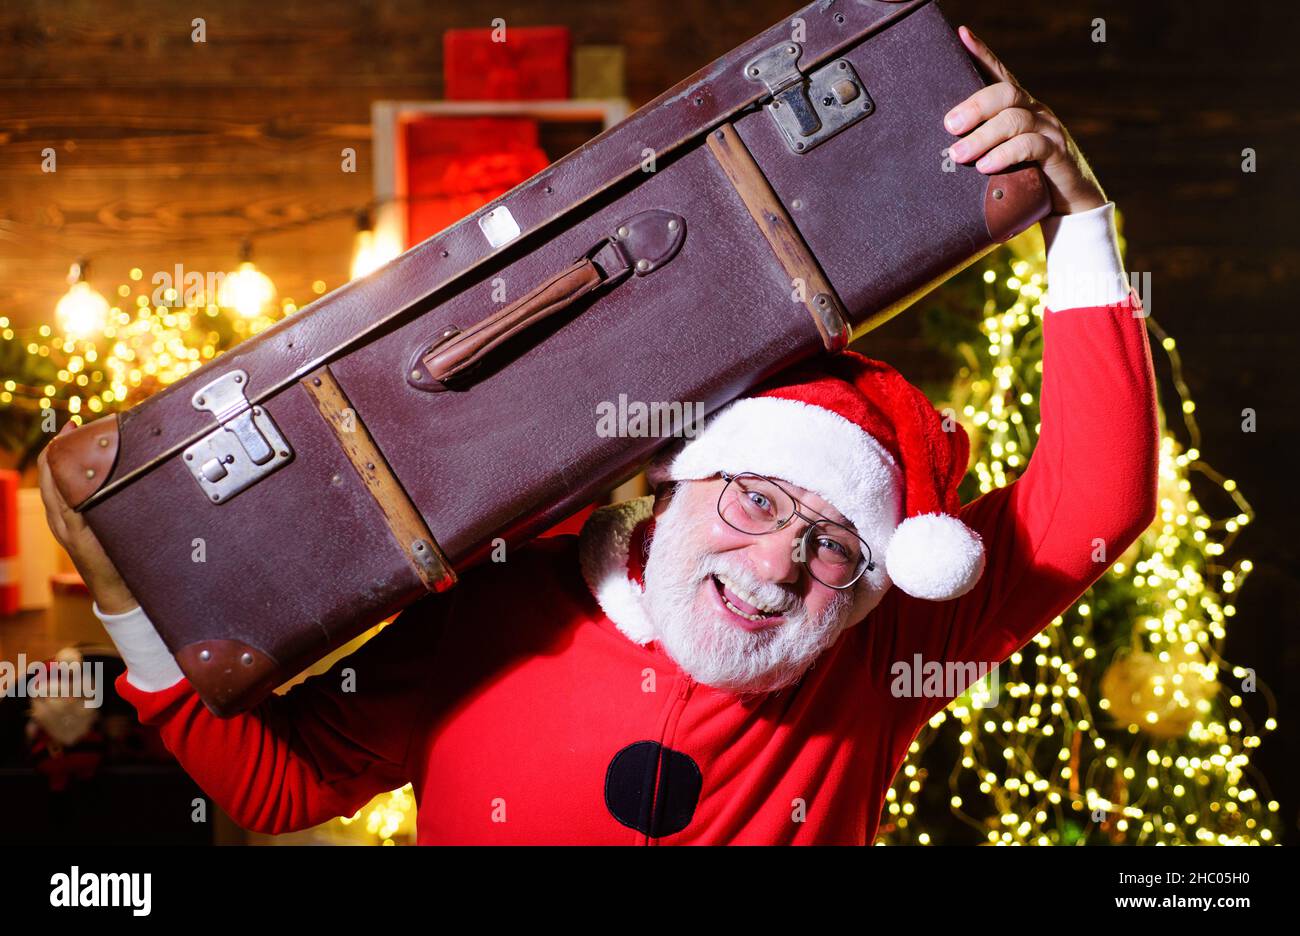 Weihnachtsfeiertage. Reisen, Tourismus, Urlaub. Weihnachtsmann mit Koffer. Weihnachtsmann mit Gepäck unterwegs. Stockfoto